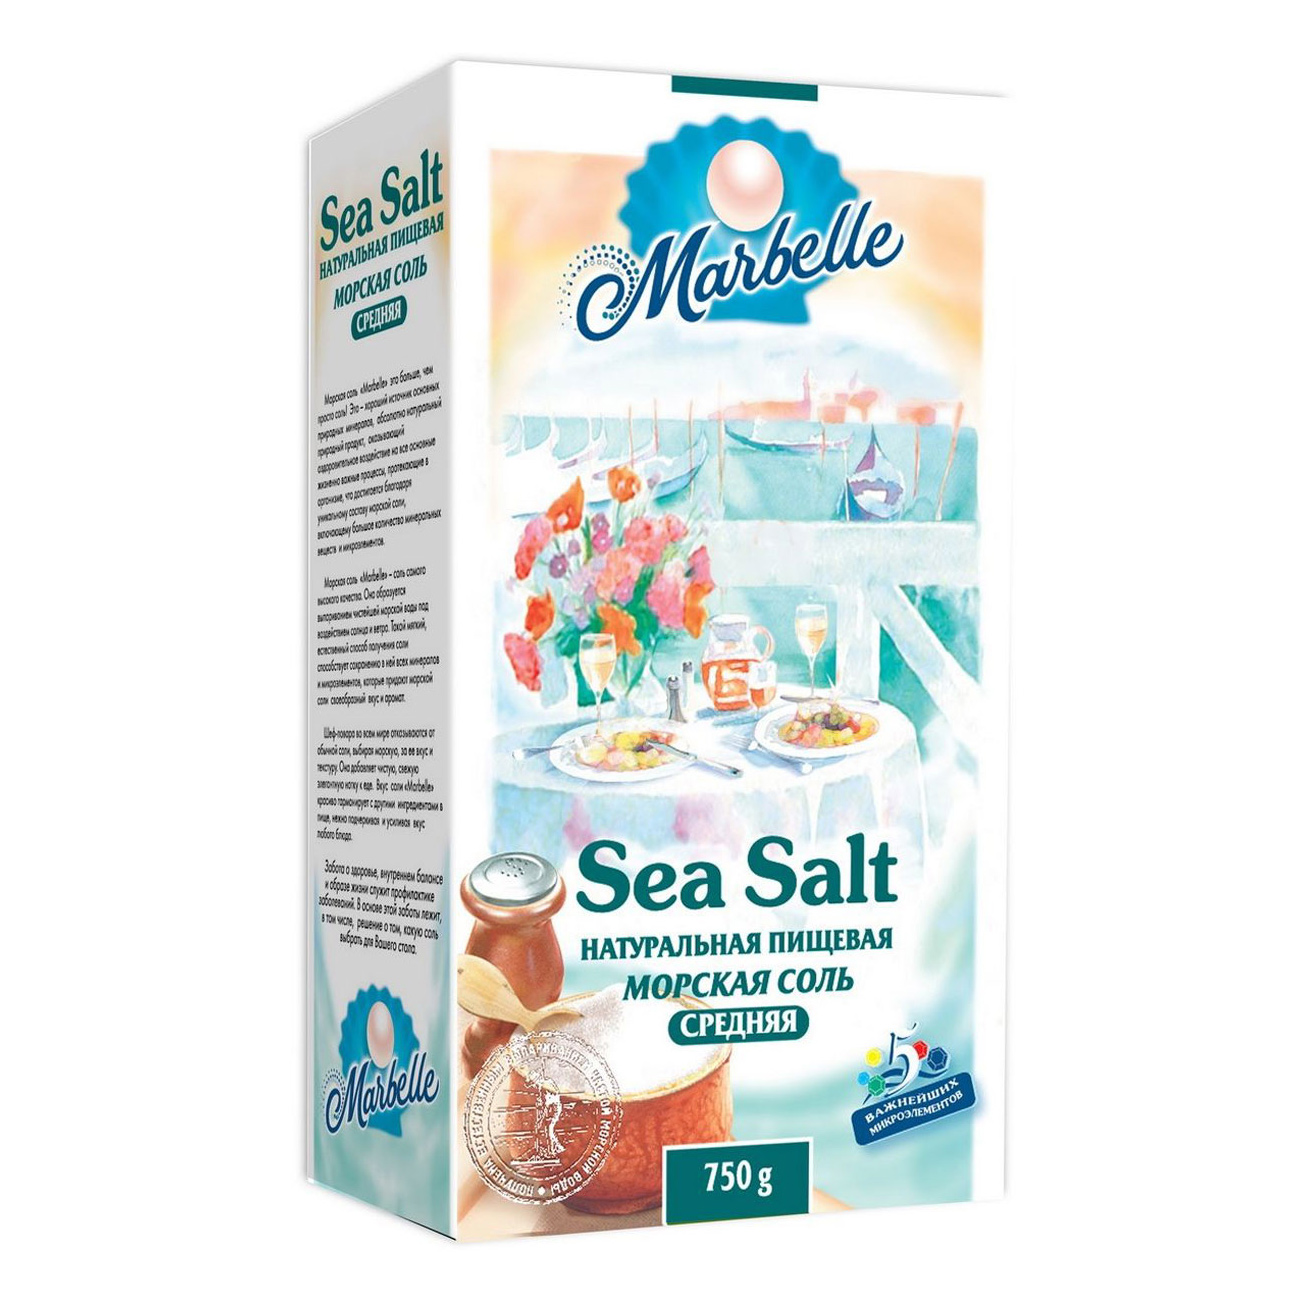 Соль Marbelle морская пищевая средняя 750 г морская соль 4 life крупная 500г